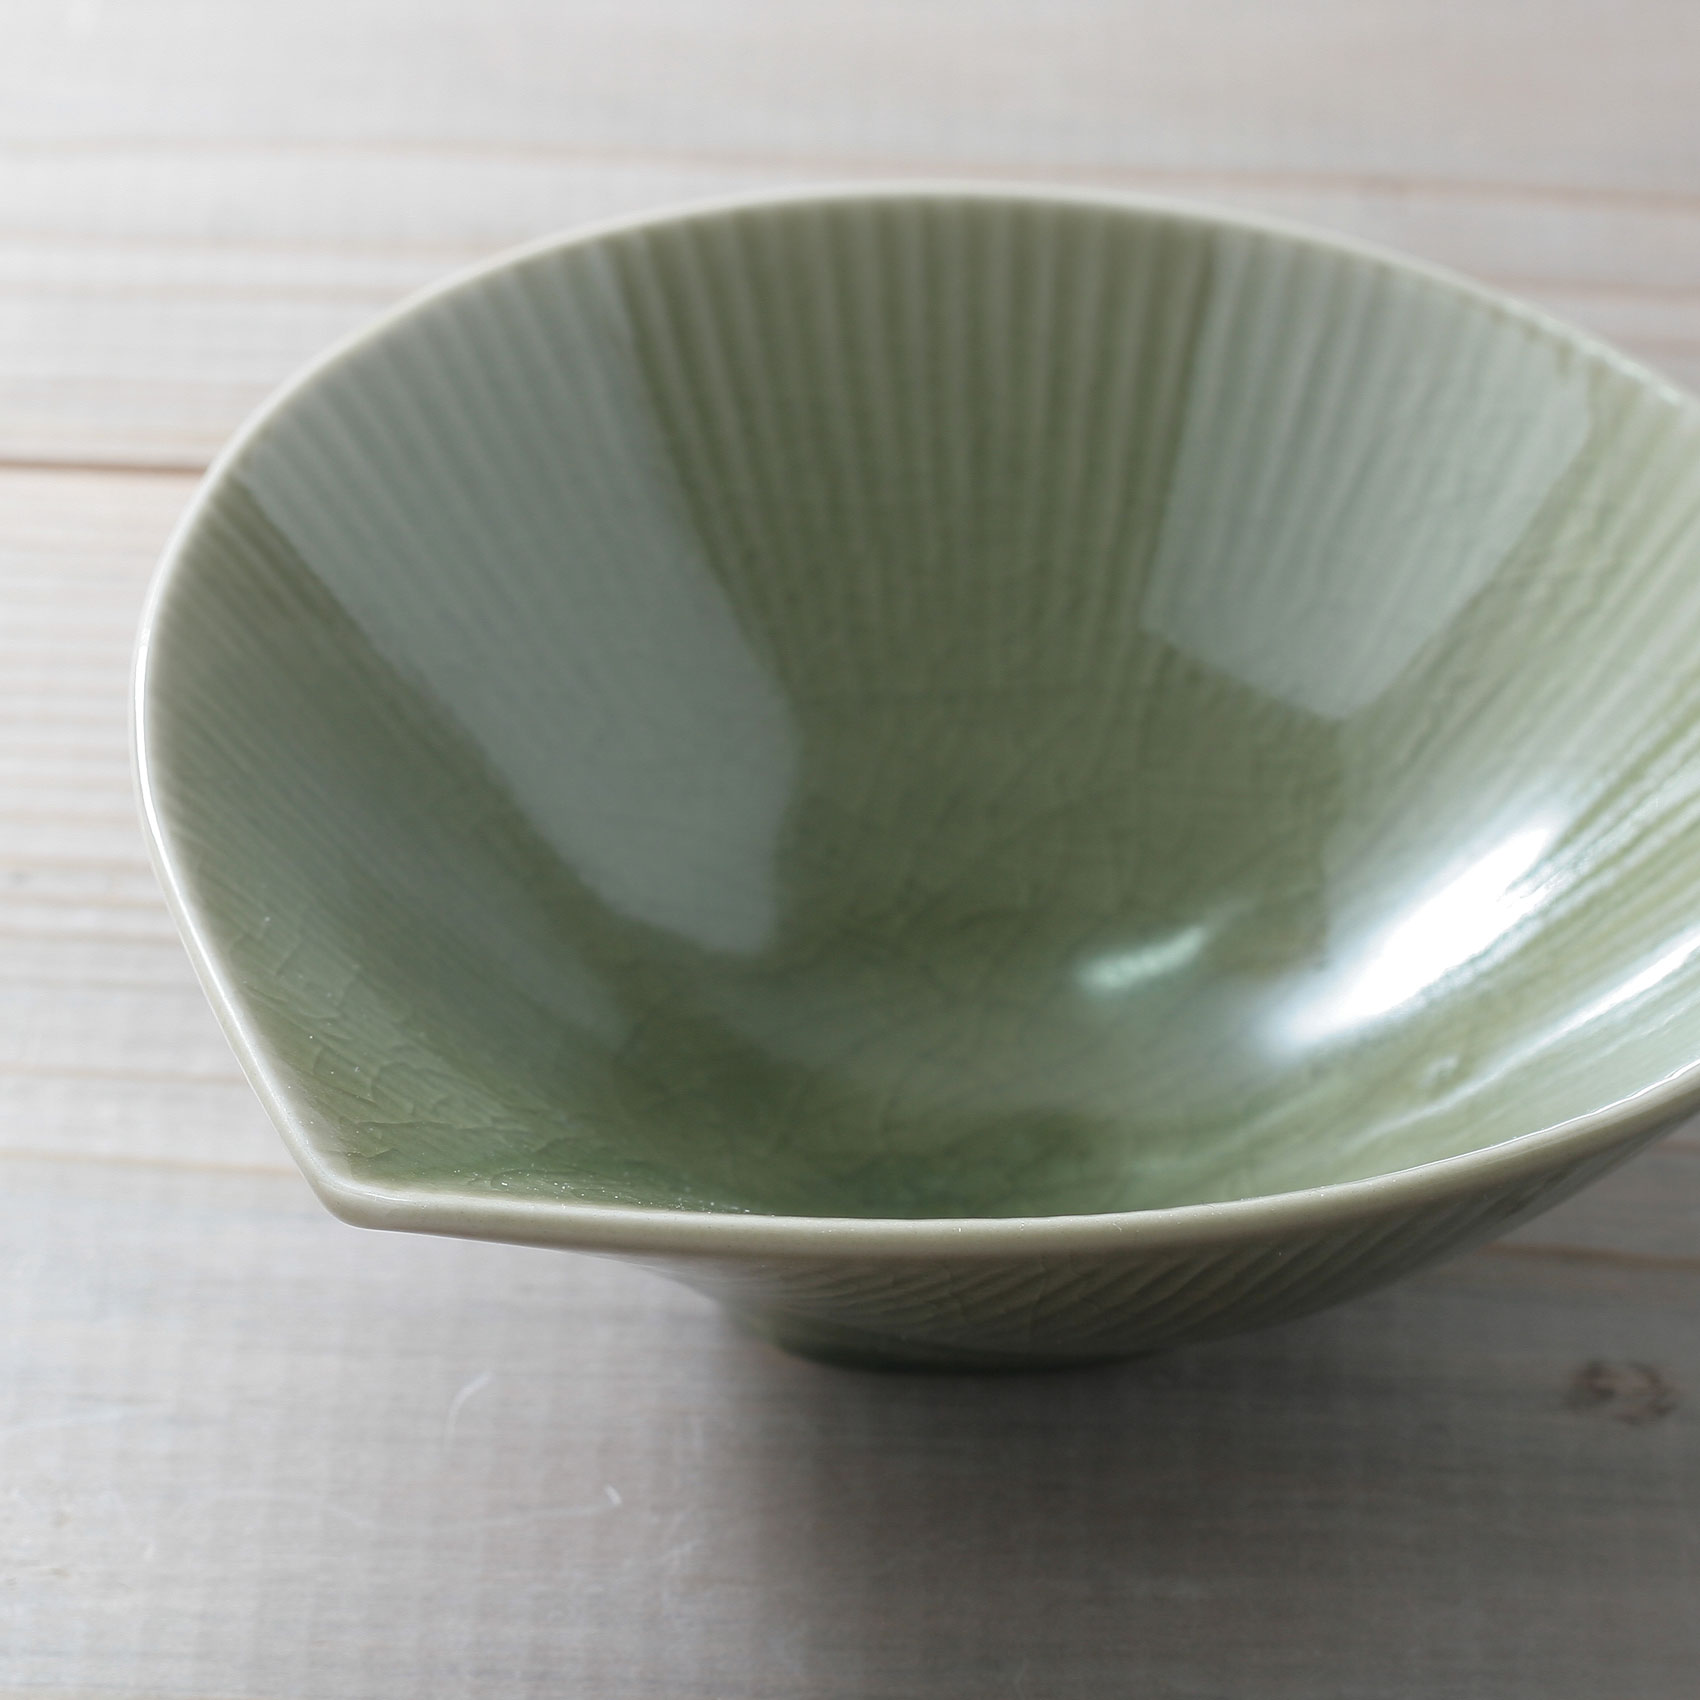 22416 リーフ 小鉢 グリーン 緑 陶器 美濃焼 日本製